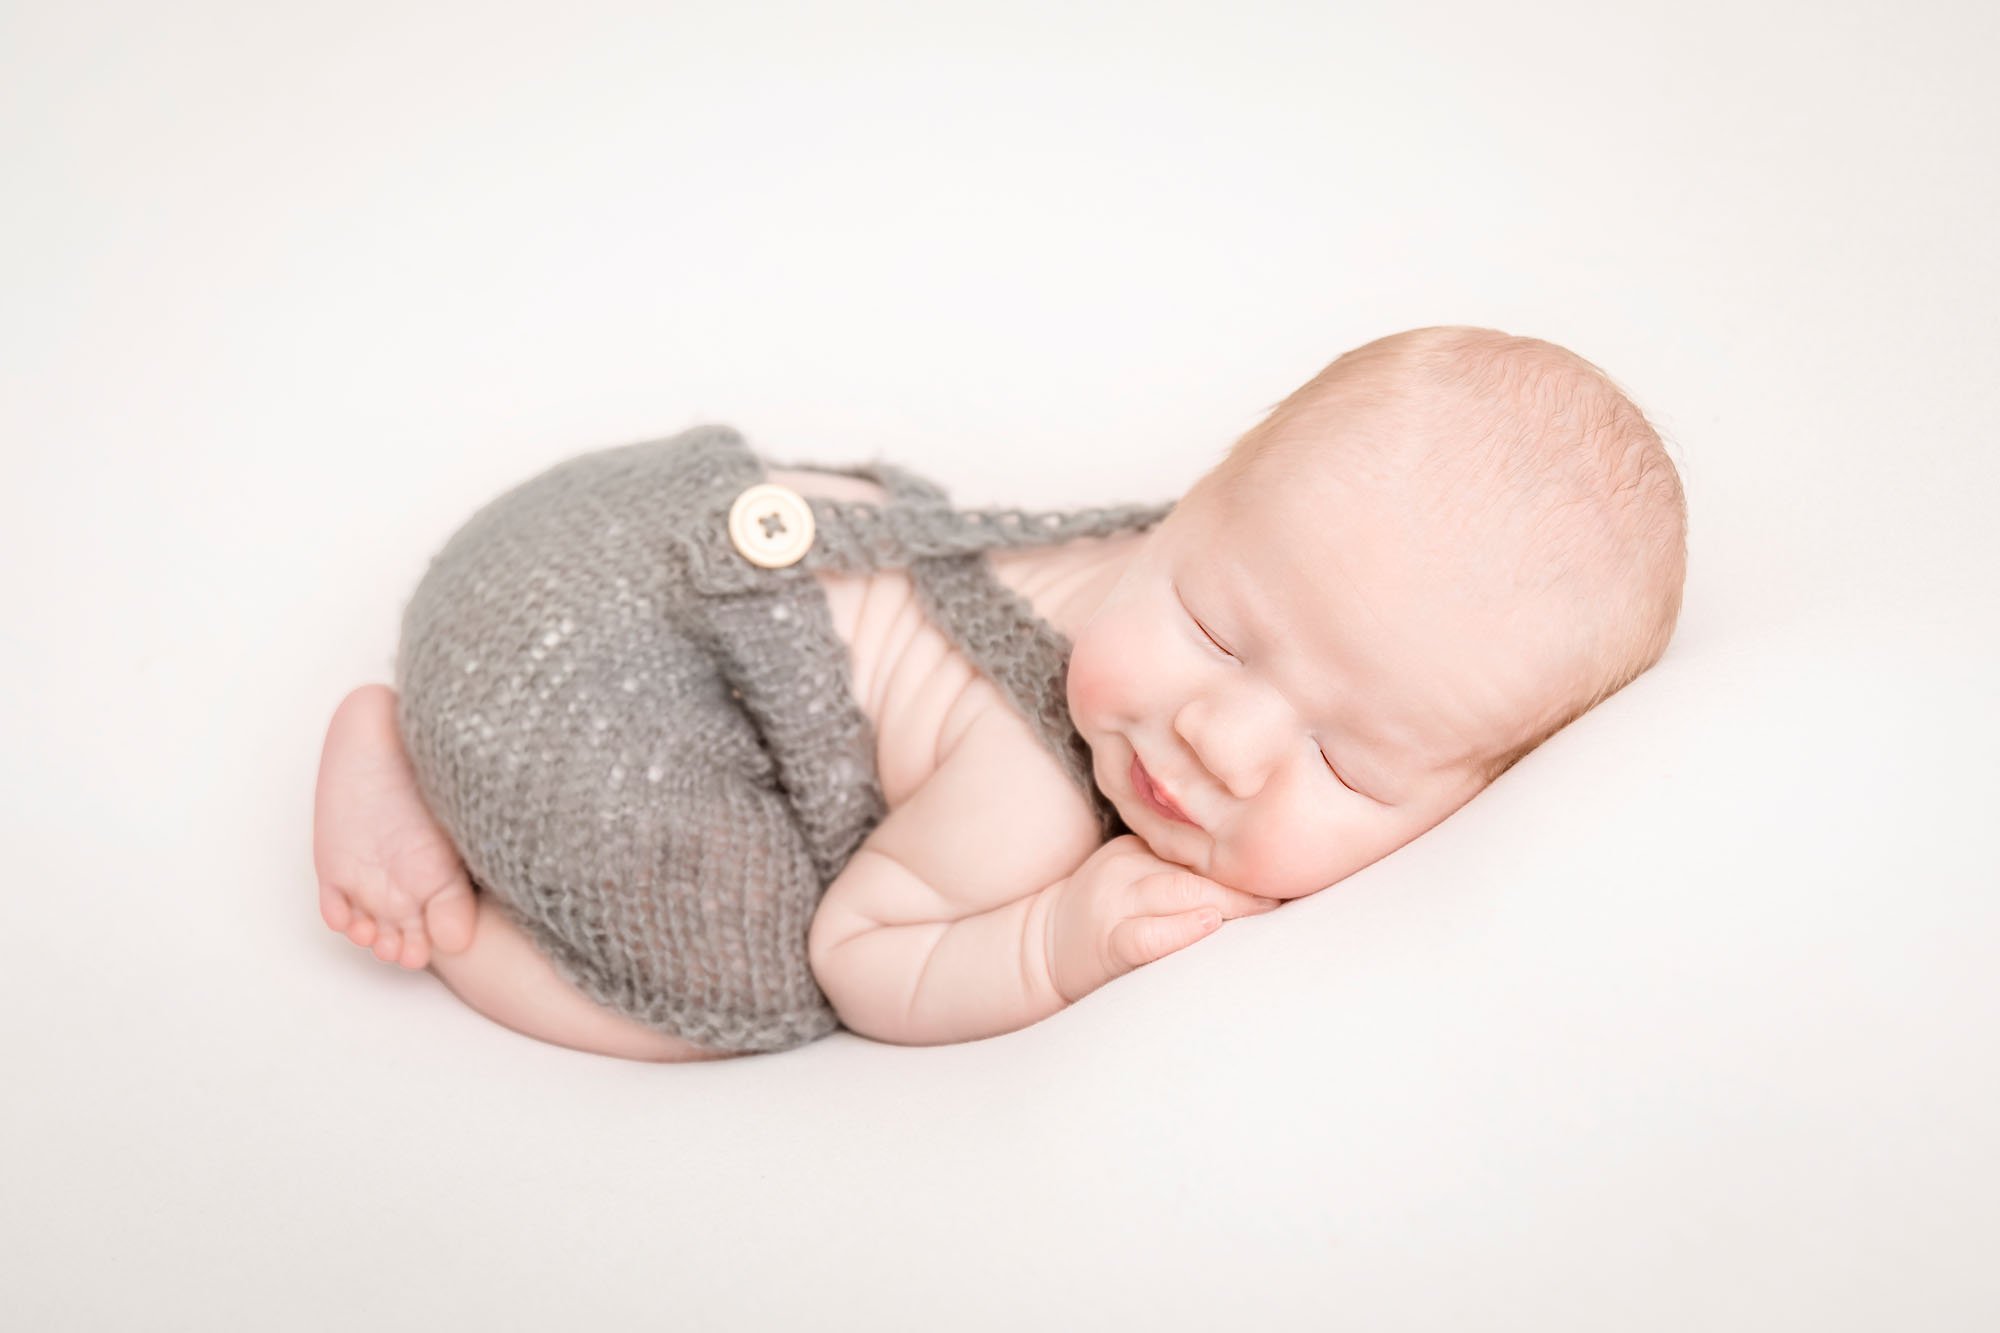 Newborn-photography-in-leeds-baby-bum-up.jpg